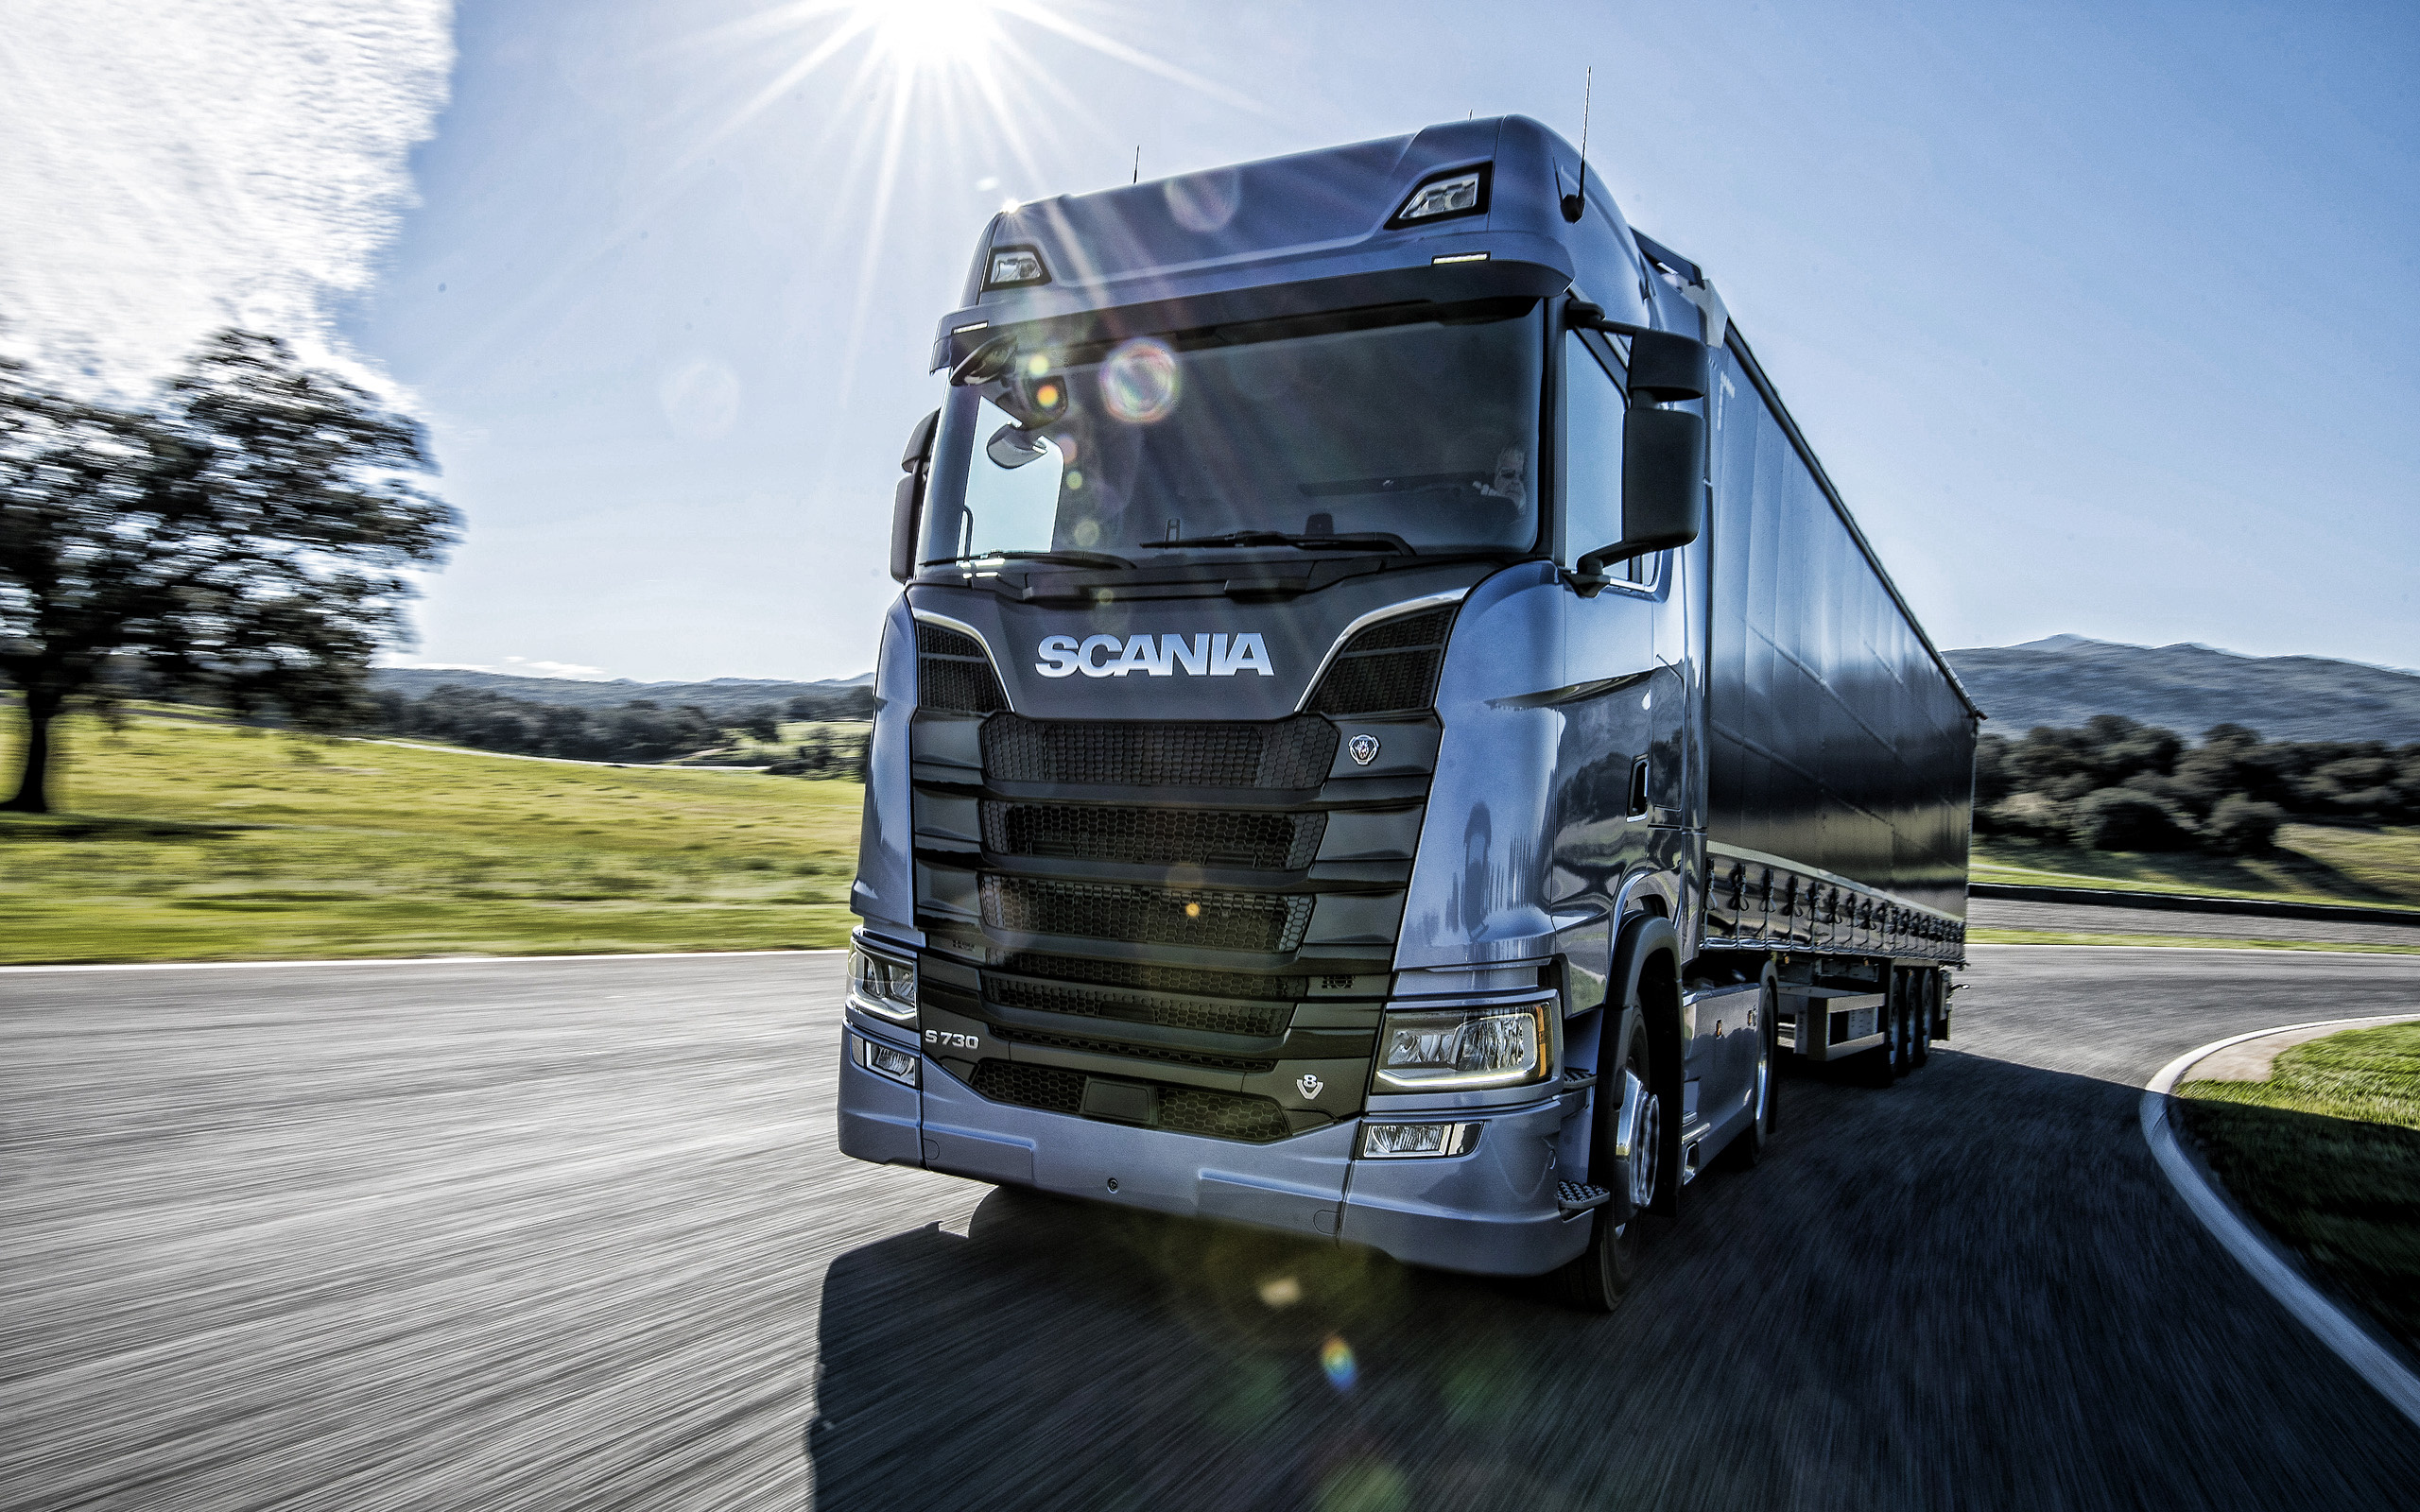 Scania S730, 2019, blue truck, 2560x1600 HD Desktop